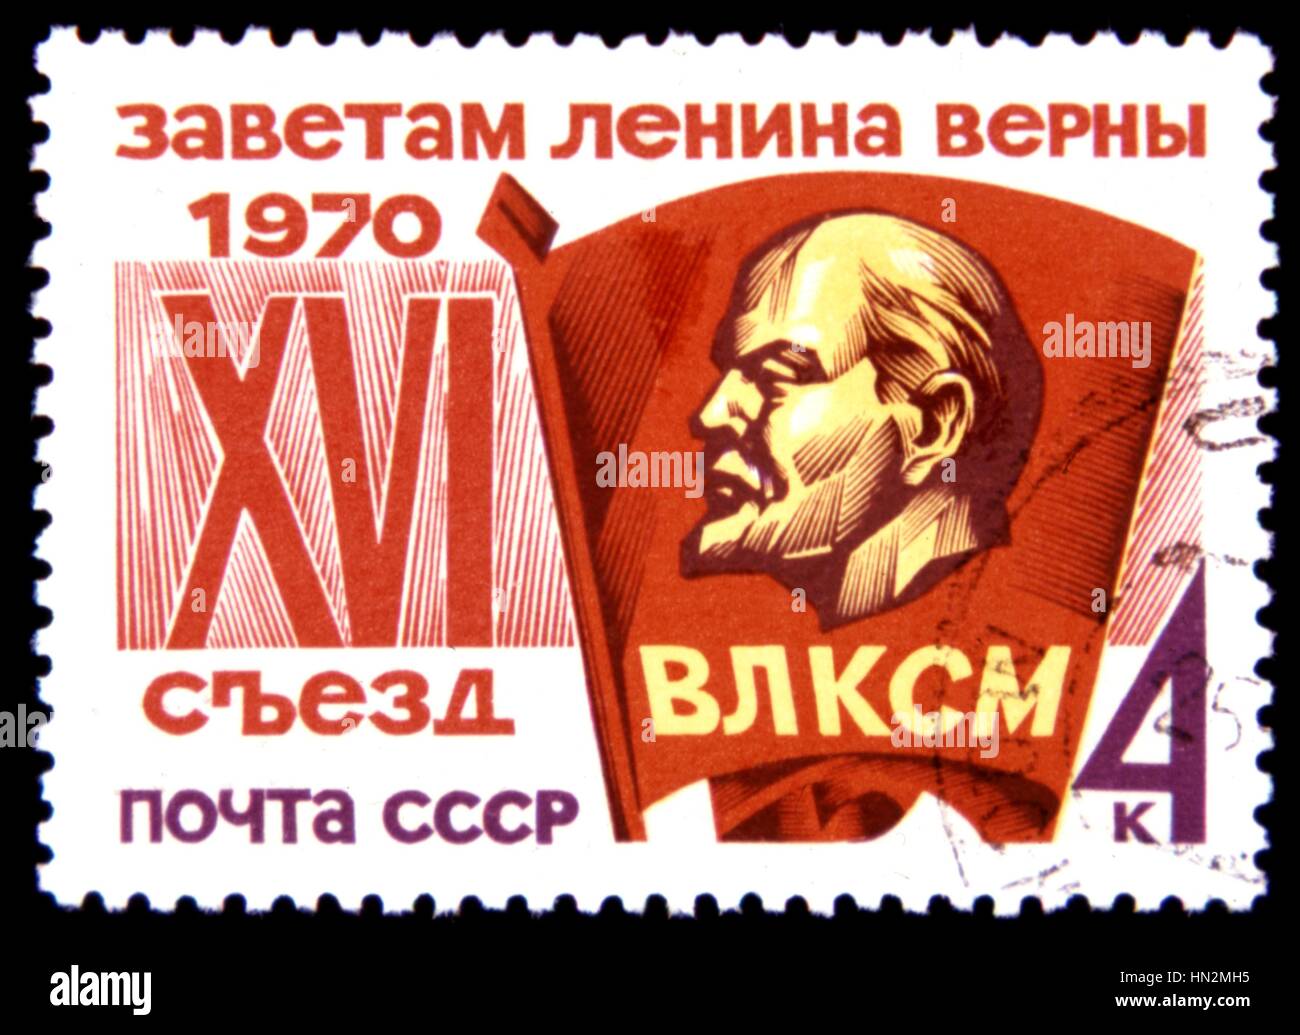 Timbre russe : 16e congrès du parti communiste de l'URSS, 1970 Banque D'Images